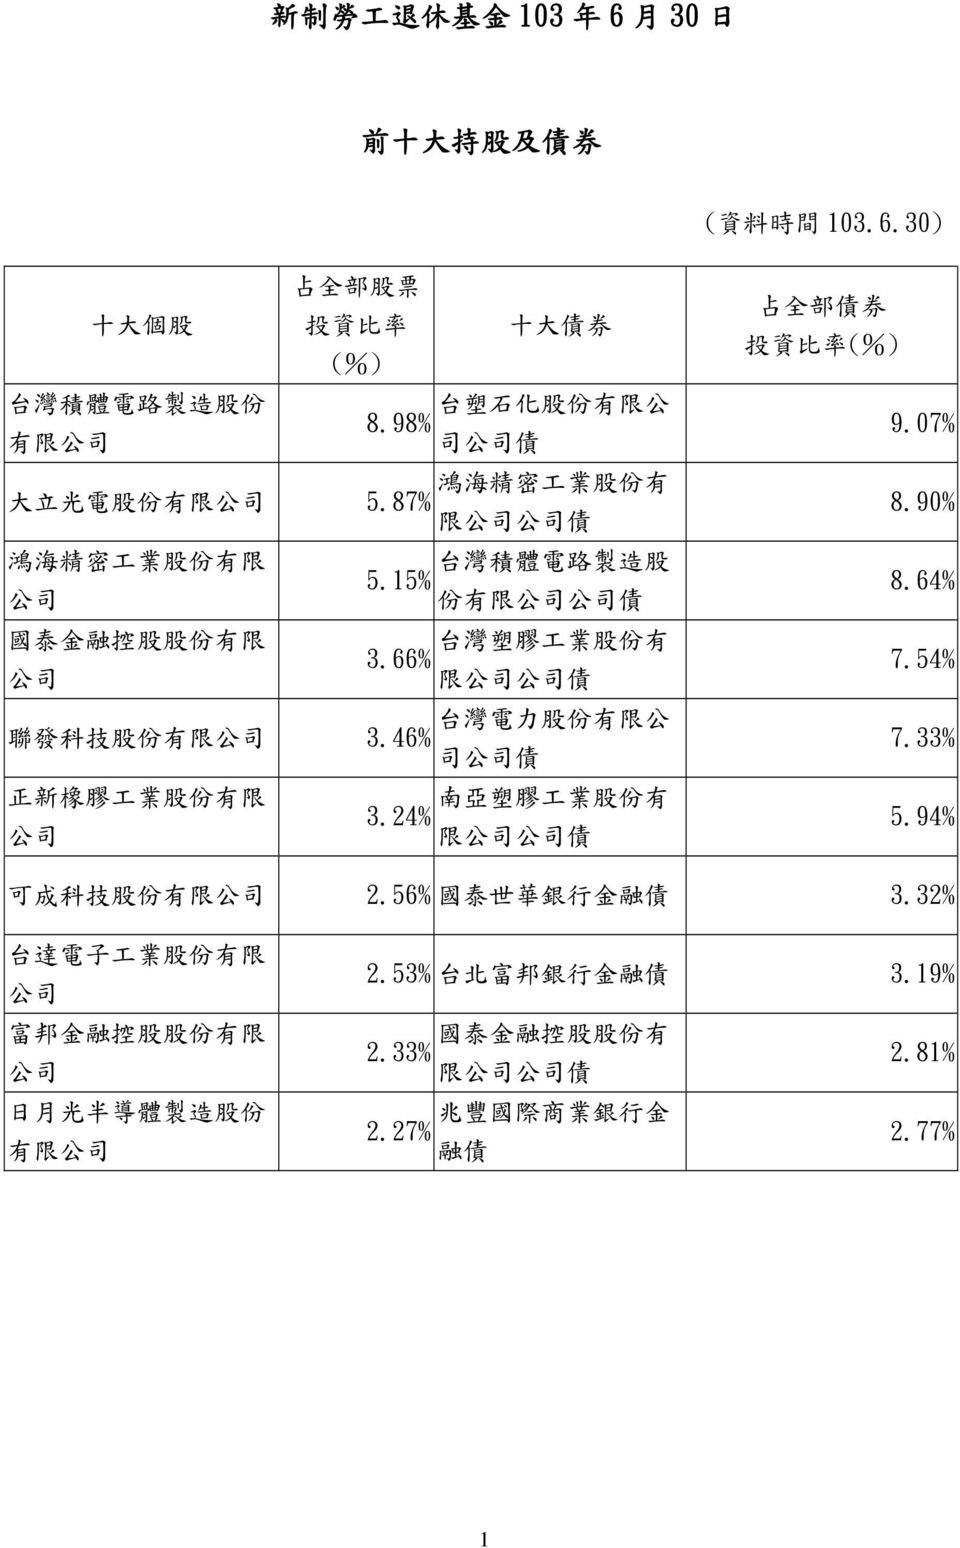 66% 限 債 聯 發 科 技 股 份 有 限 台 灣 電 力 股 份 有 限 公 3.46% 司 債 正 新 橡 膠 工 業 股 份 有 限 南 亞 塑 膠 工 業 股 份 有 3.24% 限 債 占 全 部 債 券 投 資 比 率 (%) 9.07% 8.90% 8.64% 7.54% 7.33% 5.